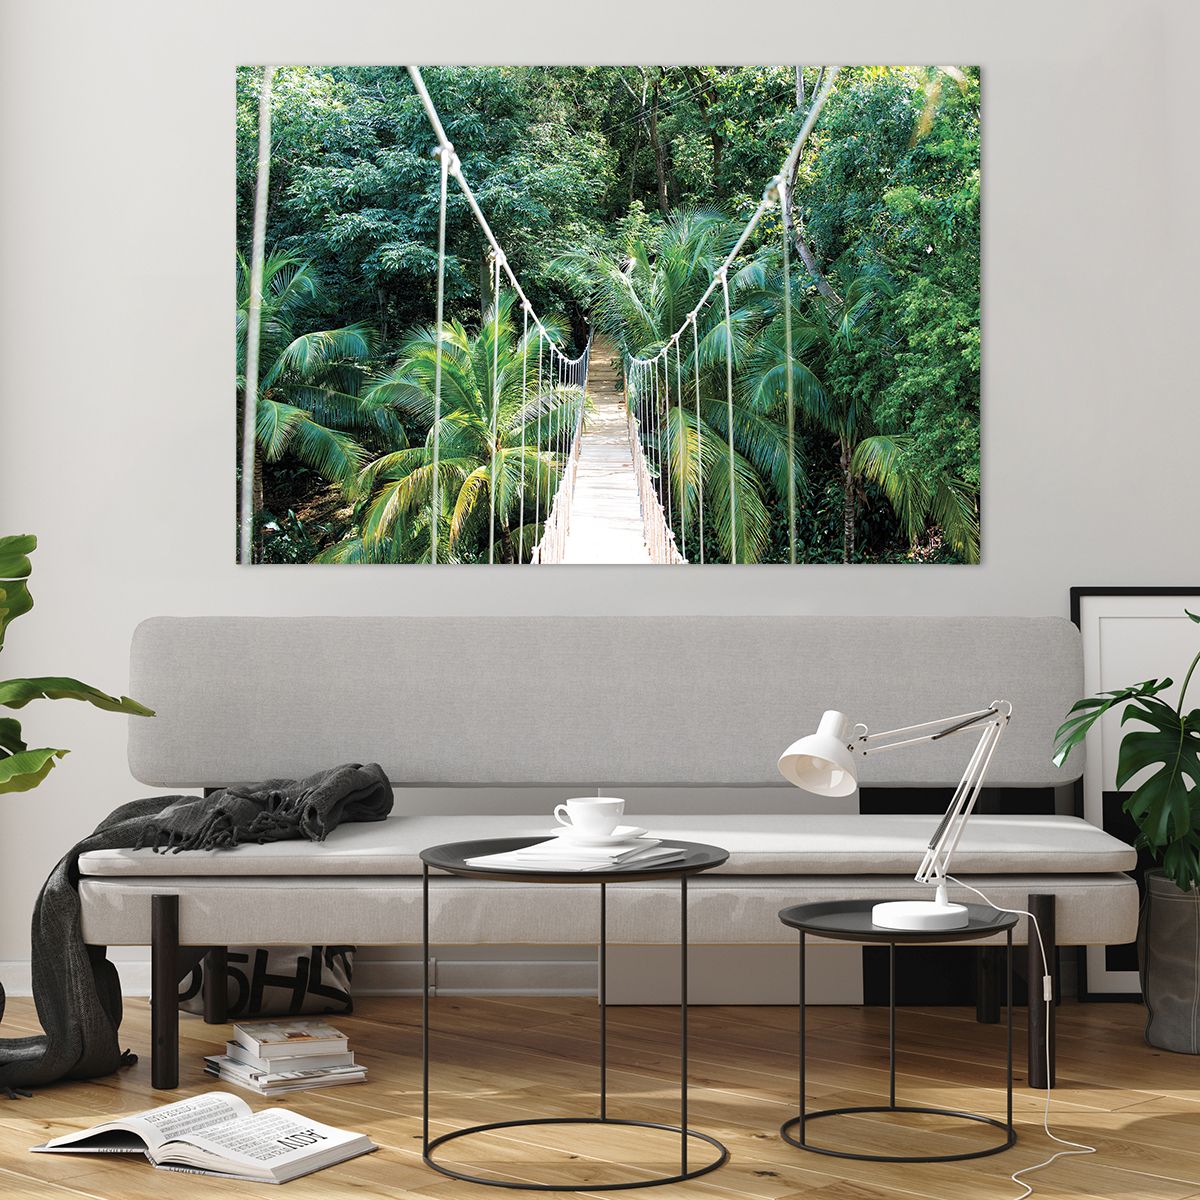 Bild på glas Landskap, Bild på glas Djungel, Bild på glas Honduras, Bild på glas Hängande Bro, Bild på glas Natur